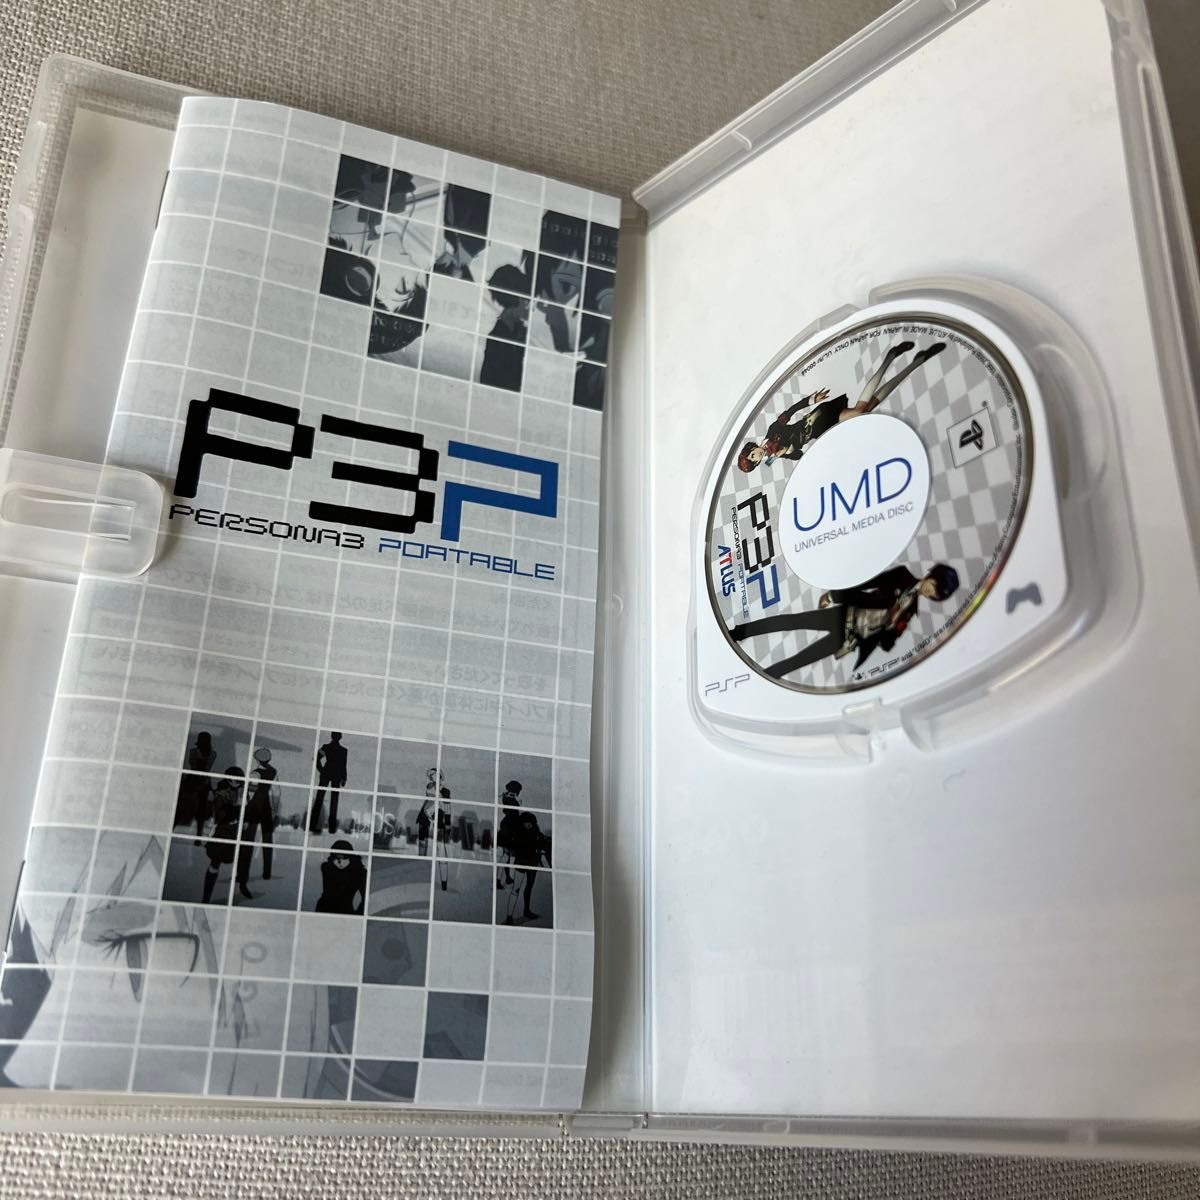 【PSP】 ペルソナ3 ポータブル [PSP the Best］